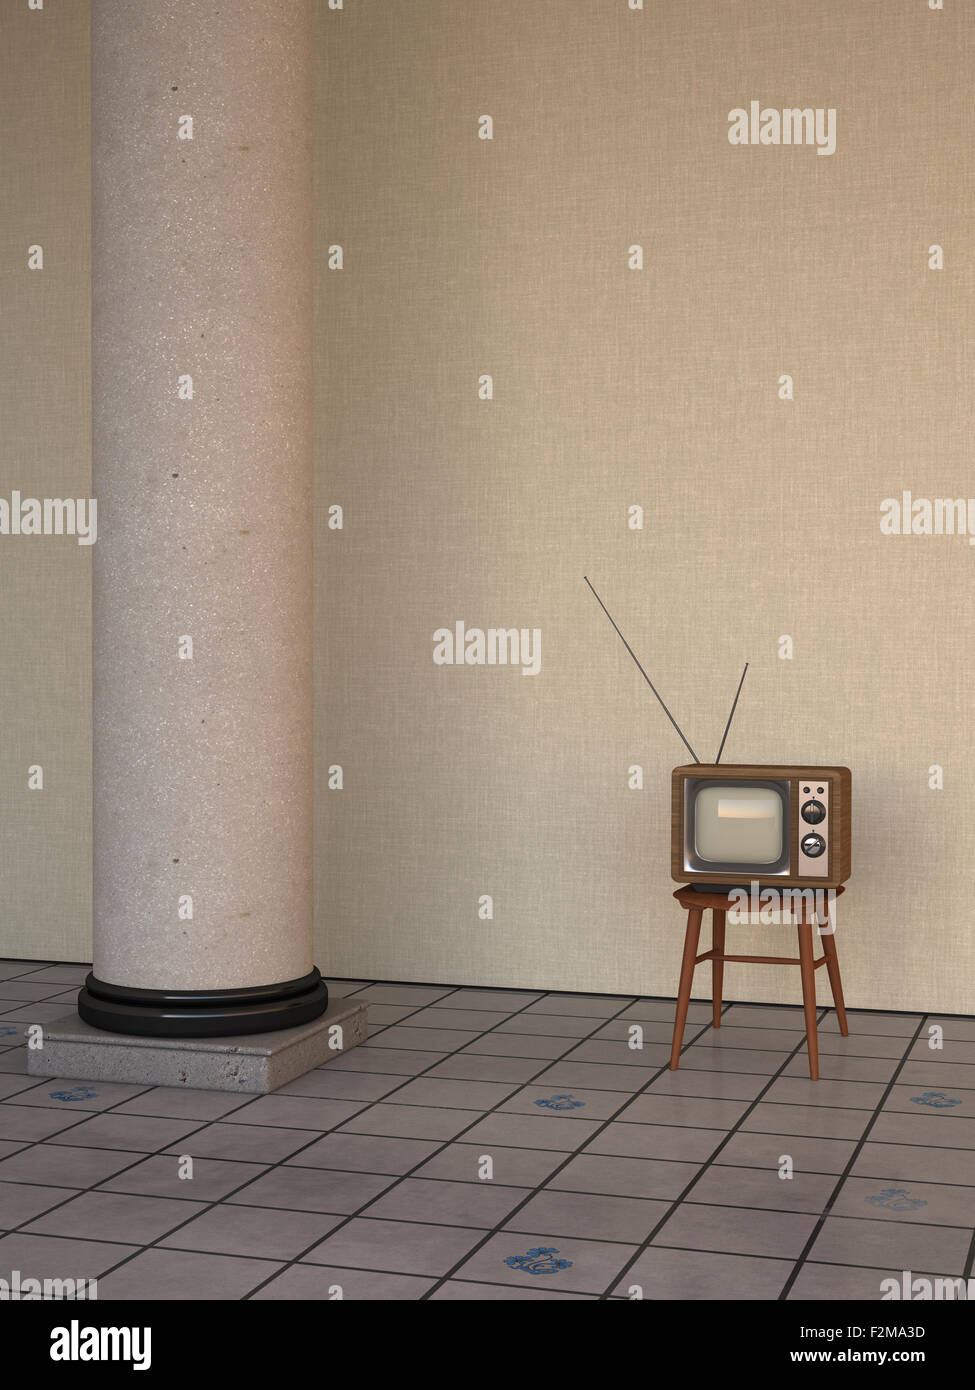 TV in retro style besides column on tiled floor, 3D Rendering Stock Photo